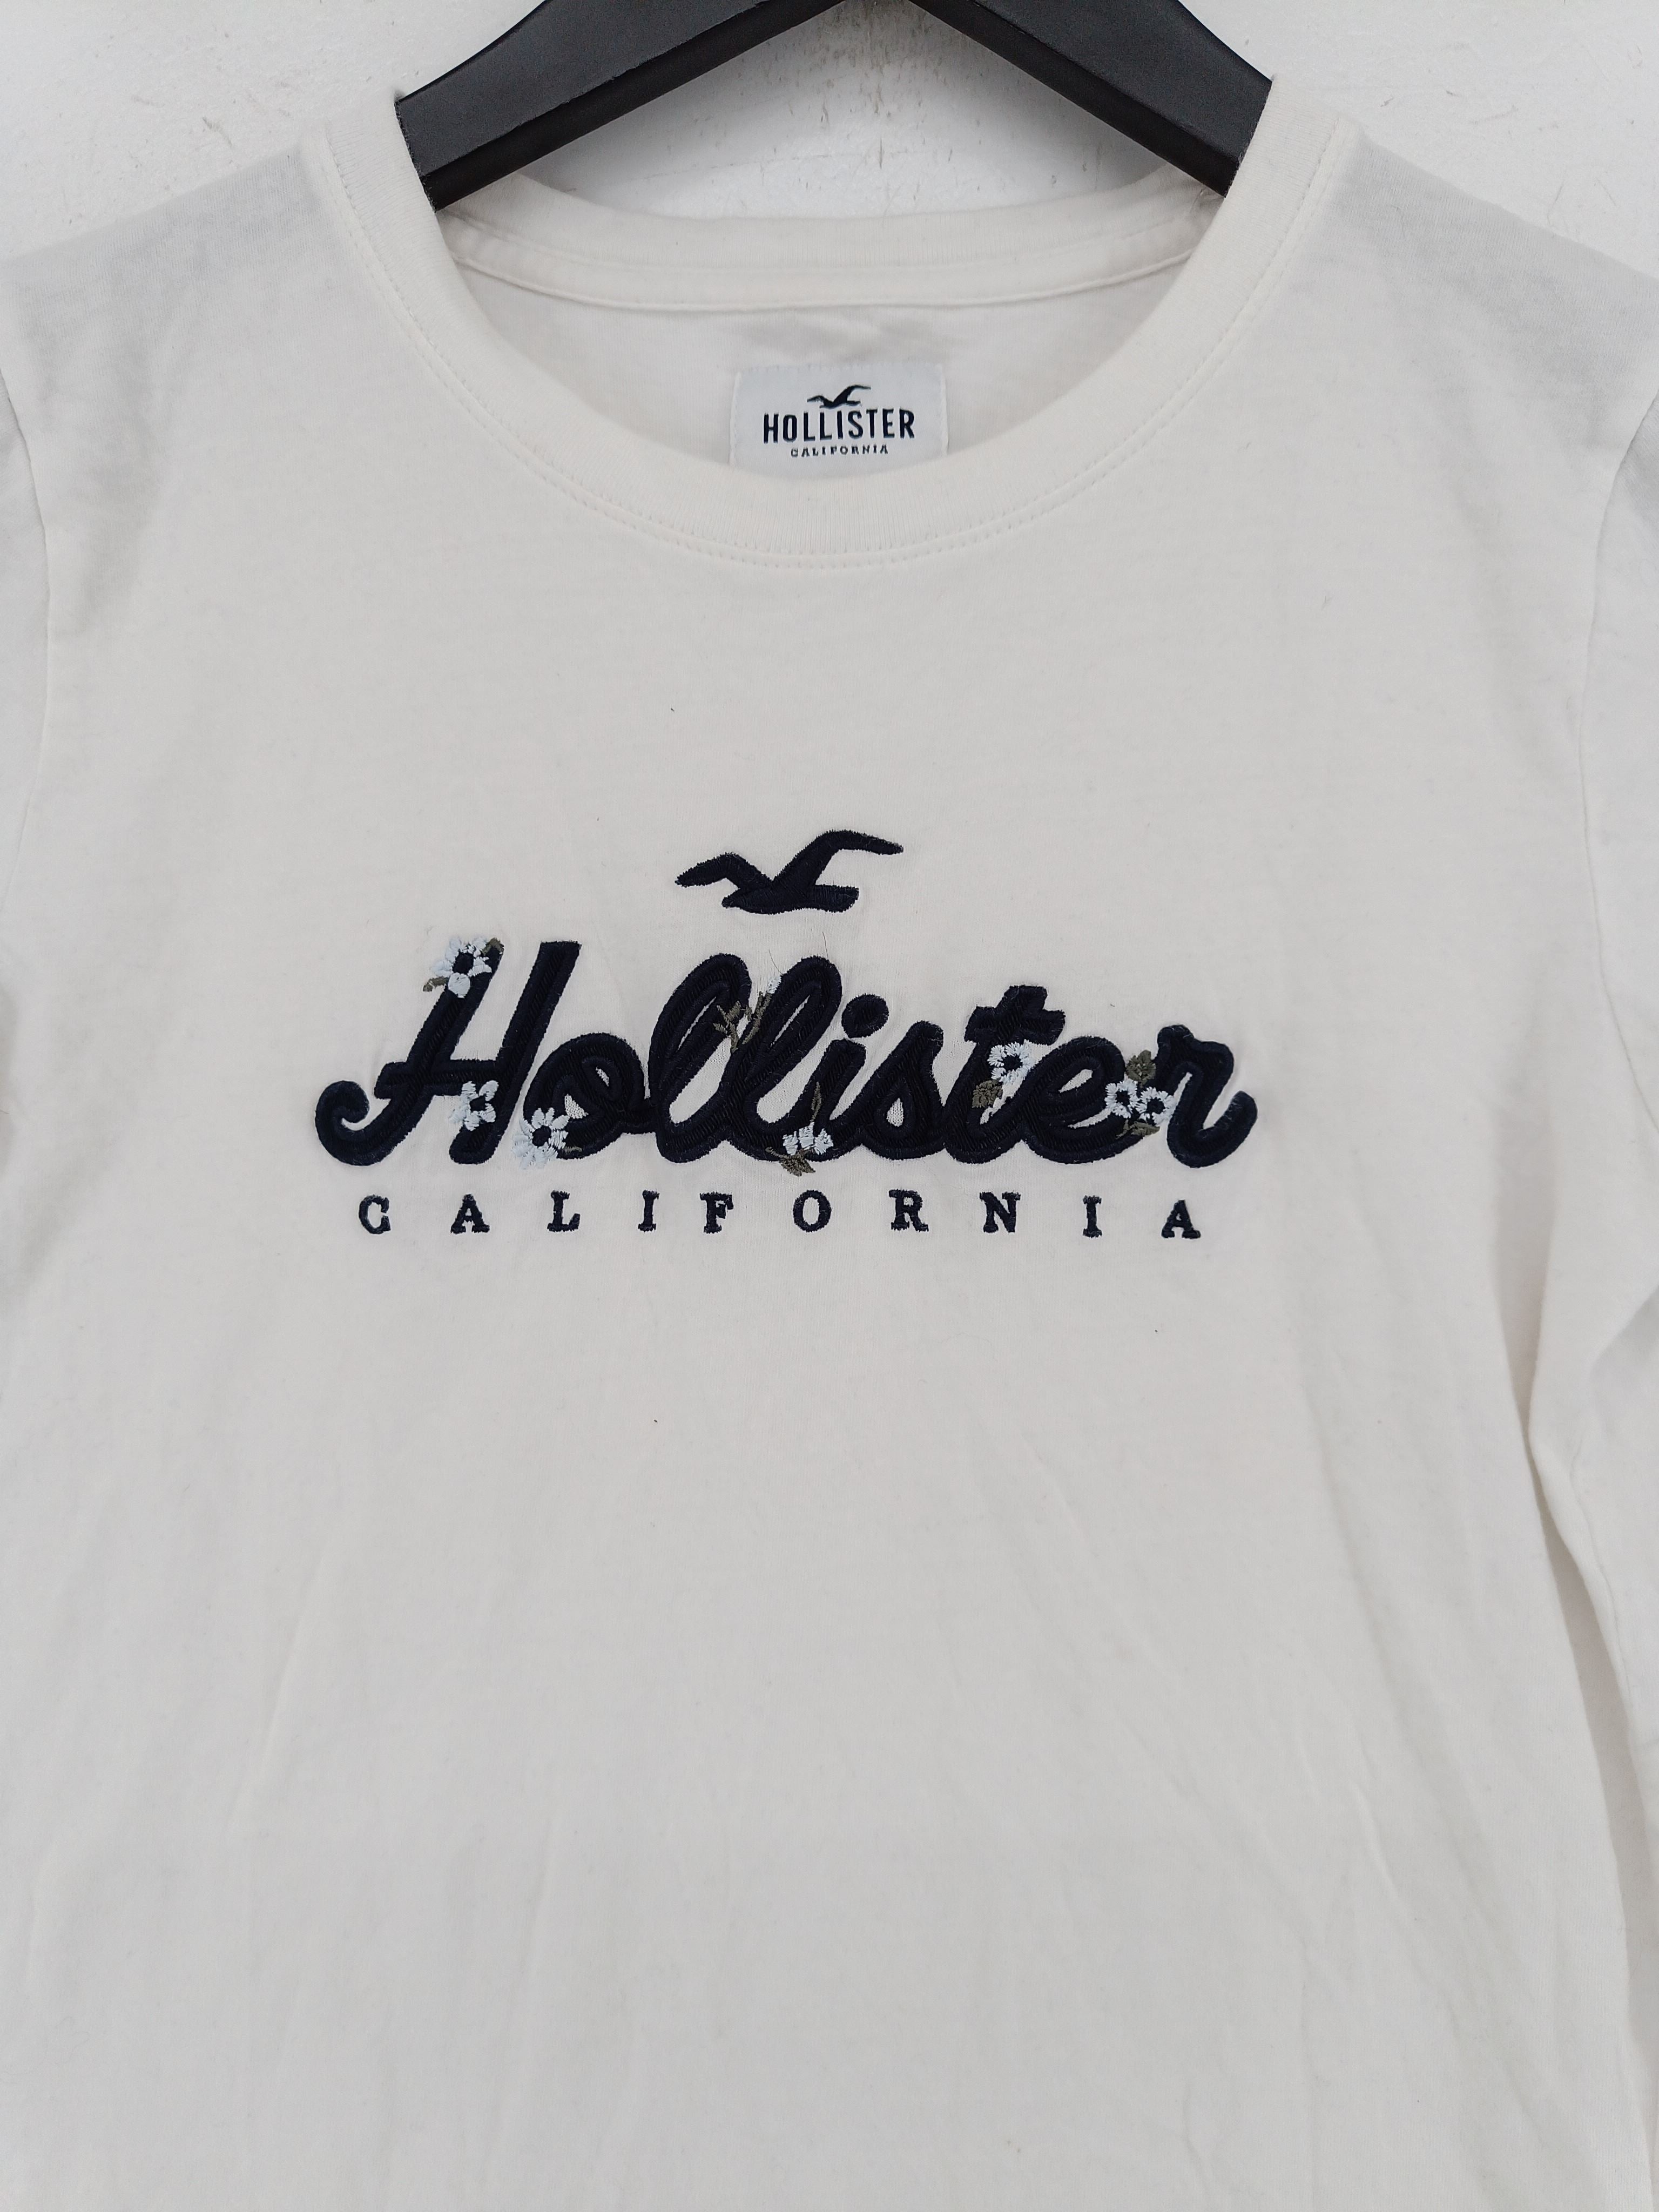 Hollister Women's T-Shirt on SALE❗️- Original from USA